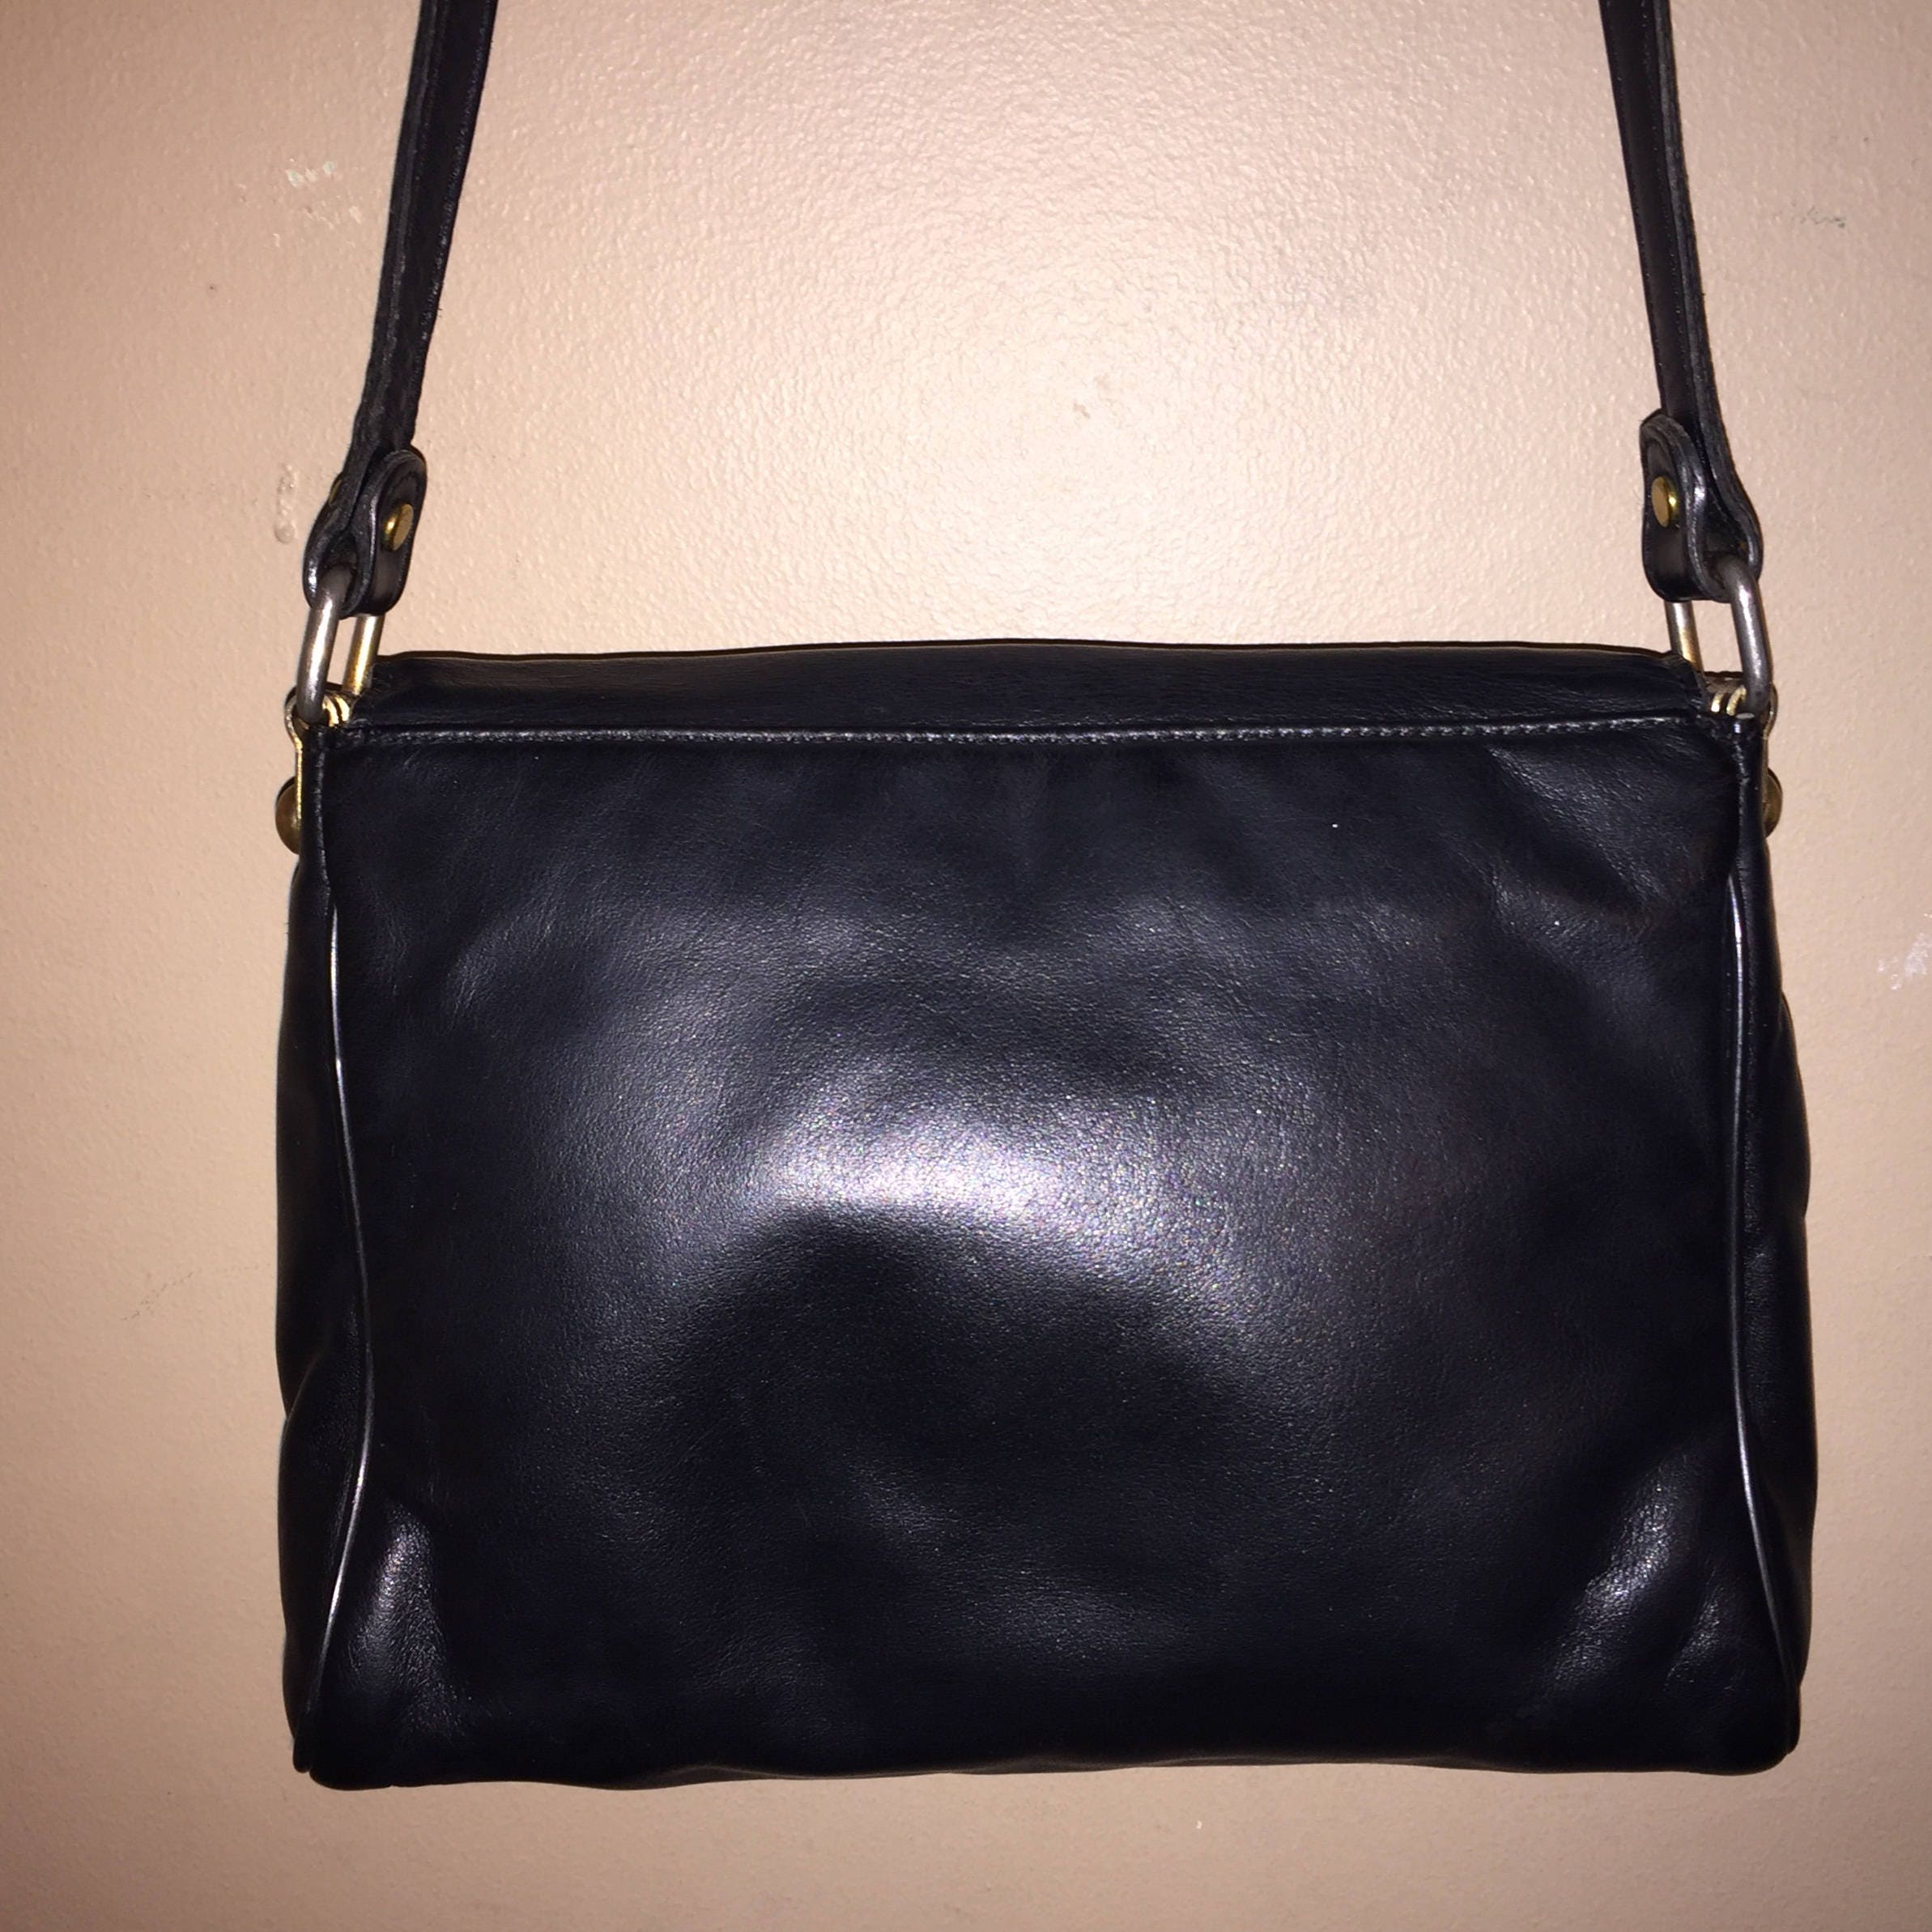 ETIENNE AIGNER VINTAGE 9 X 6 X 2.5 Black Leather Shoulder Bag | Etsy